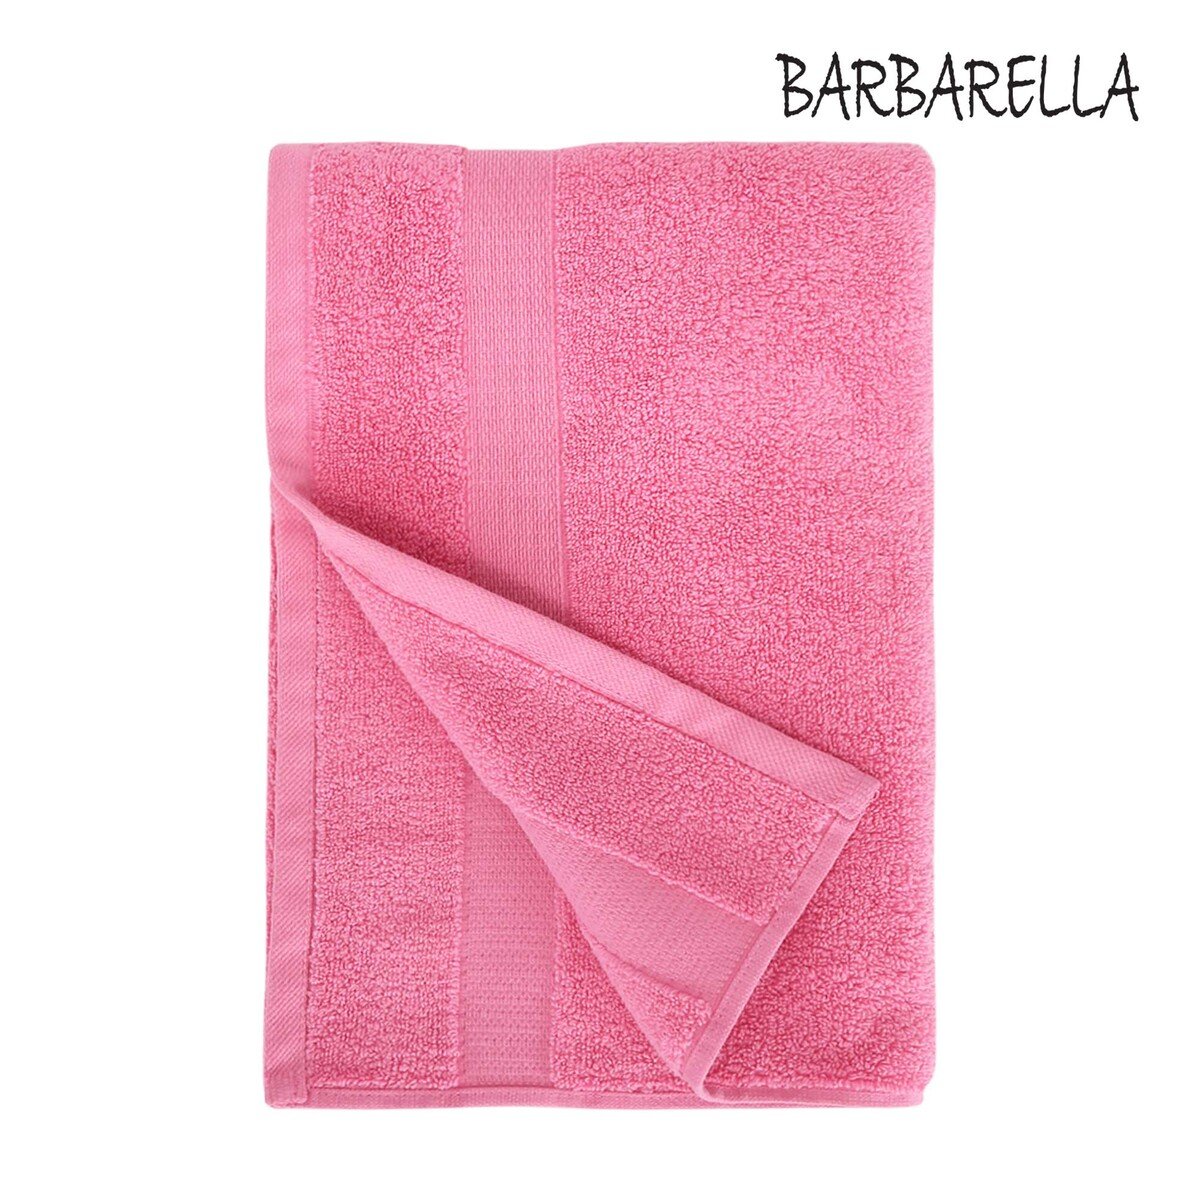 Barbarella Bath Towel Micro Cotton Rose Size: W70 x L140cm